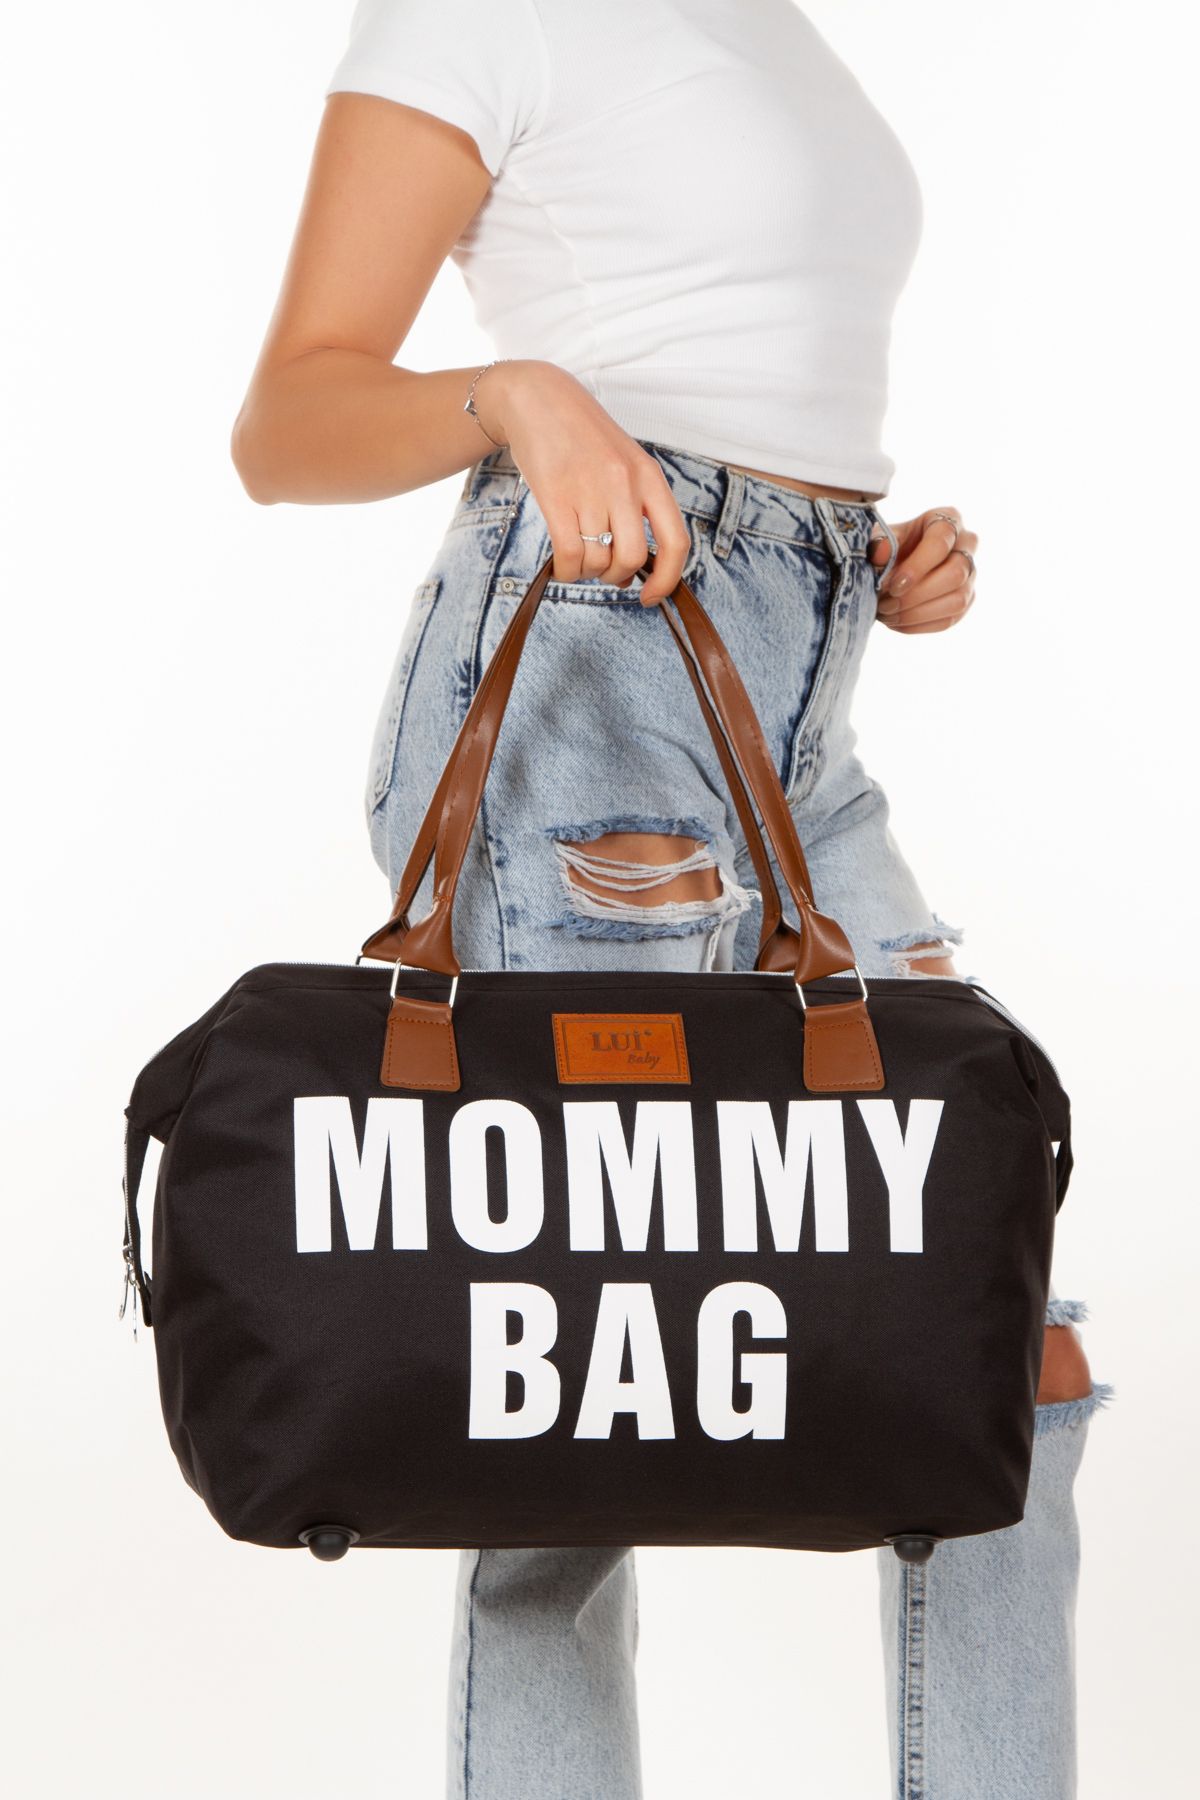 Lui Baby Mommy Bag Anne Bebek Bakım Çantası Termal Biberonlu